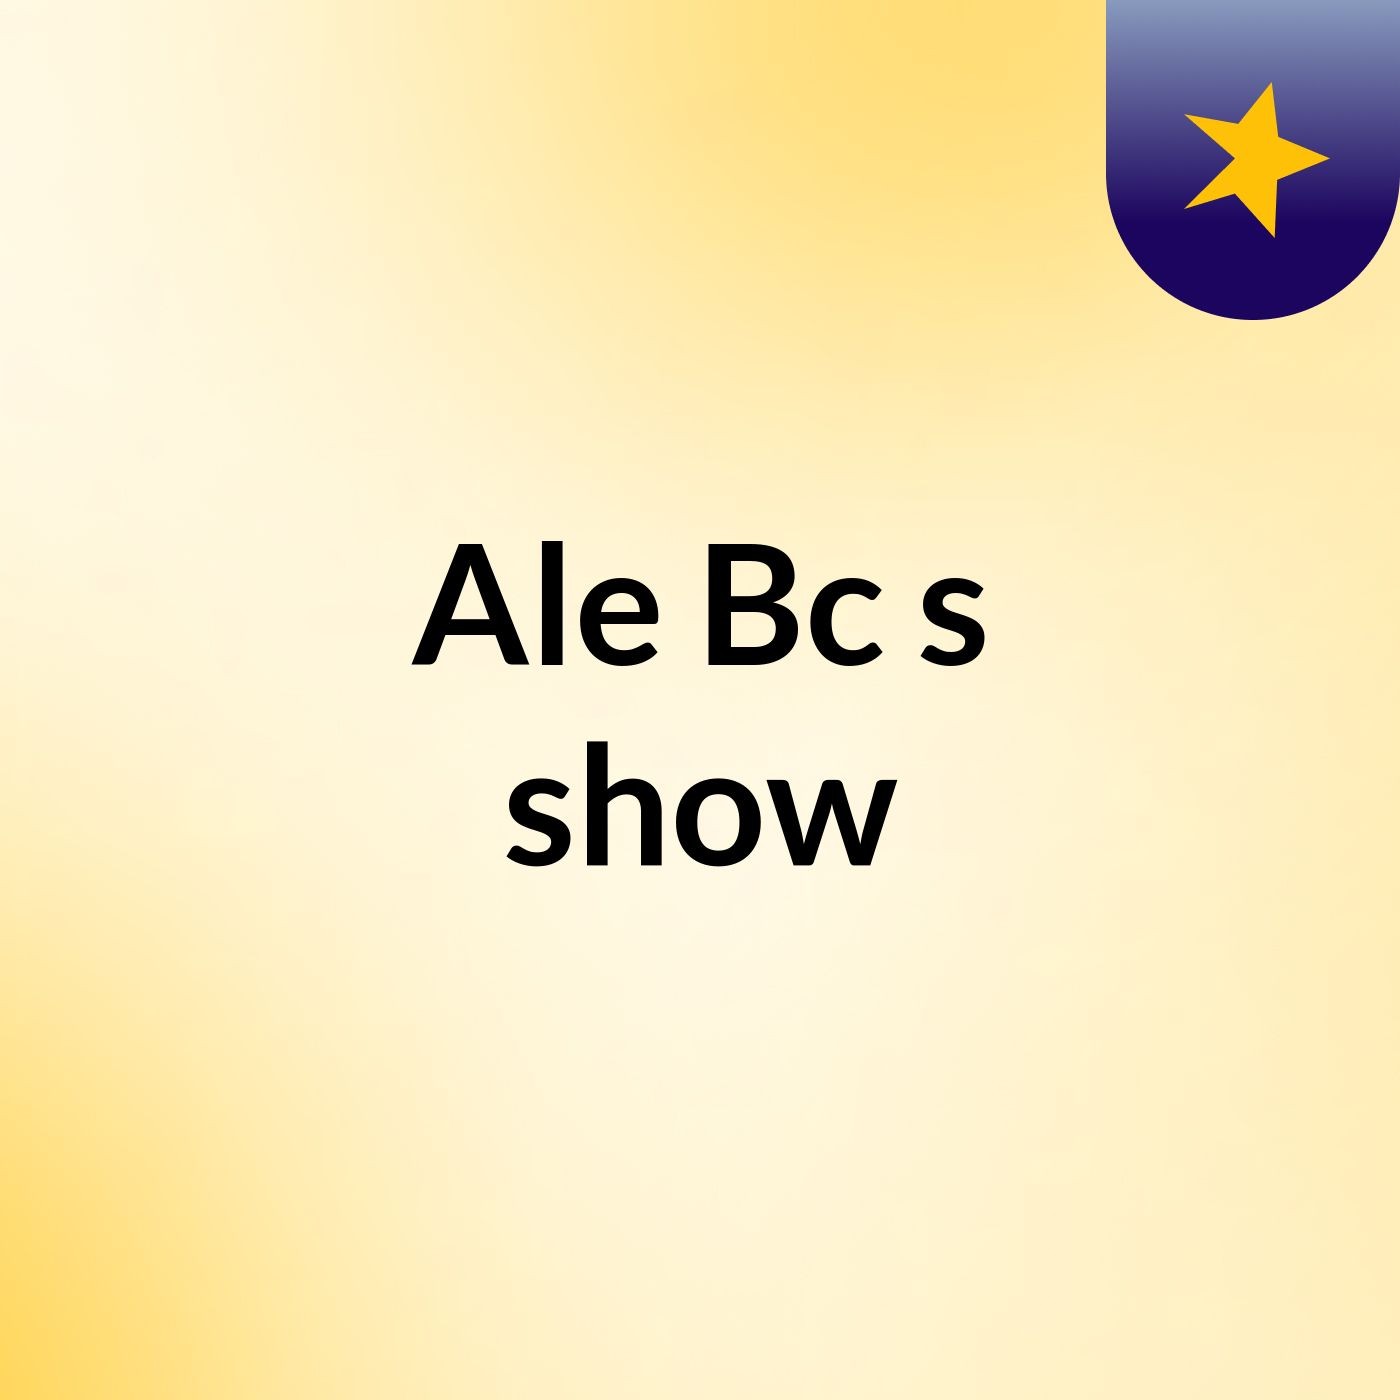 Ale Bc's show